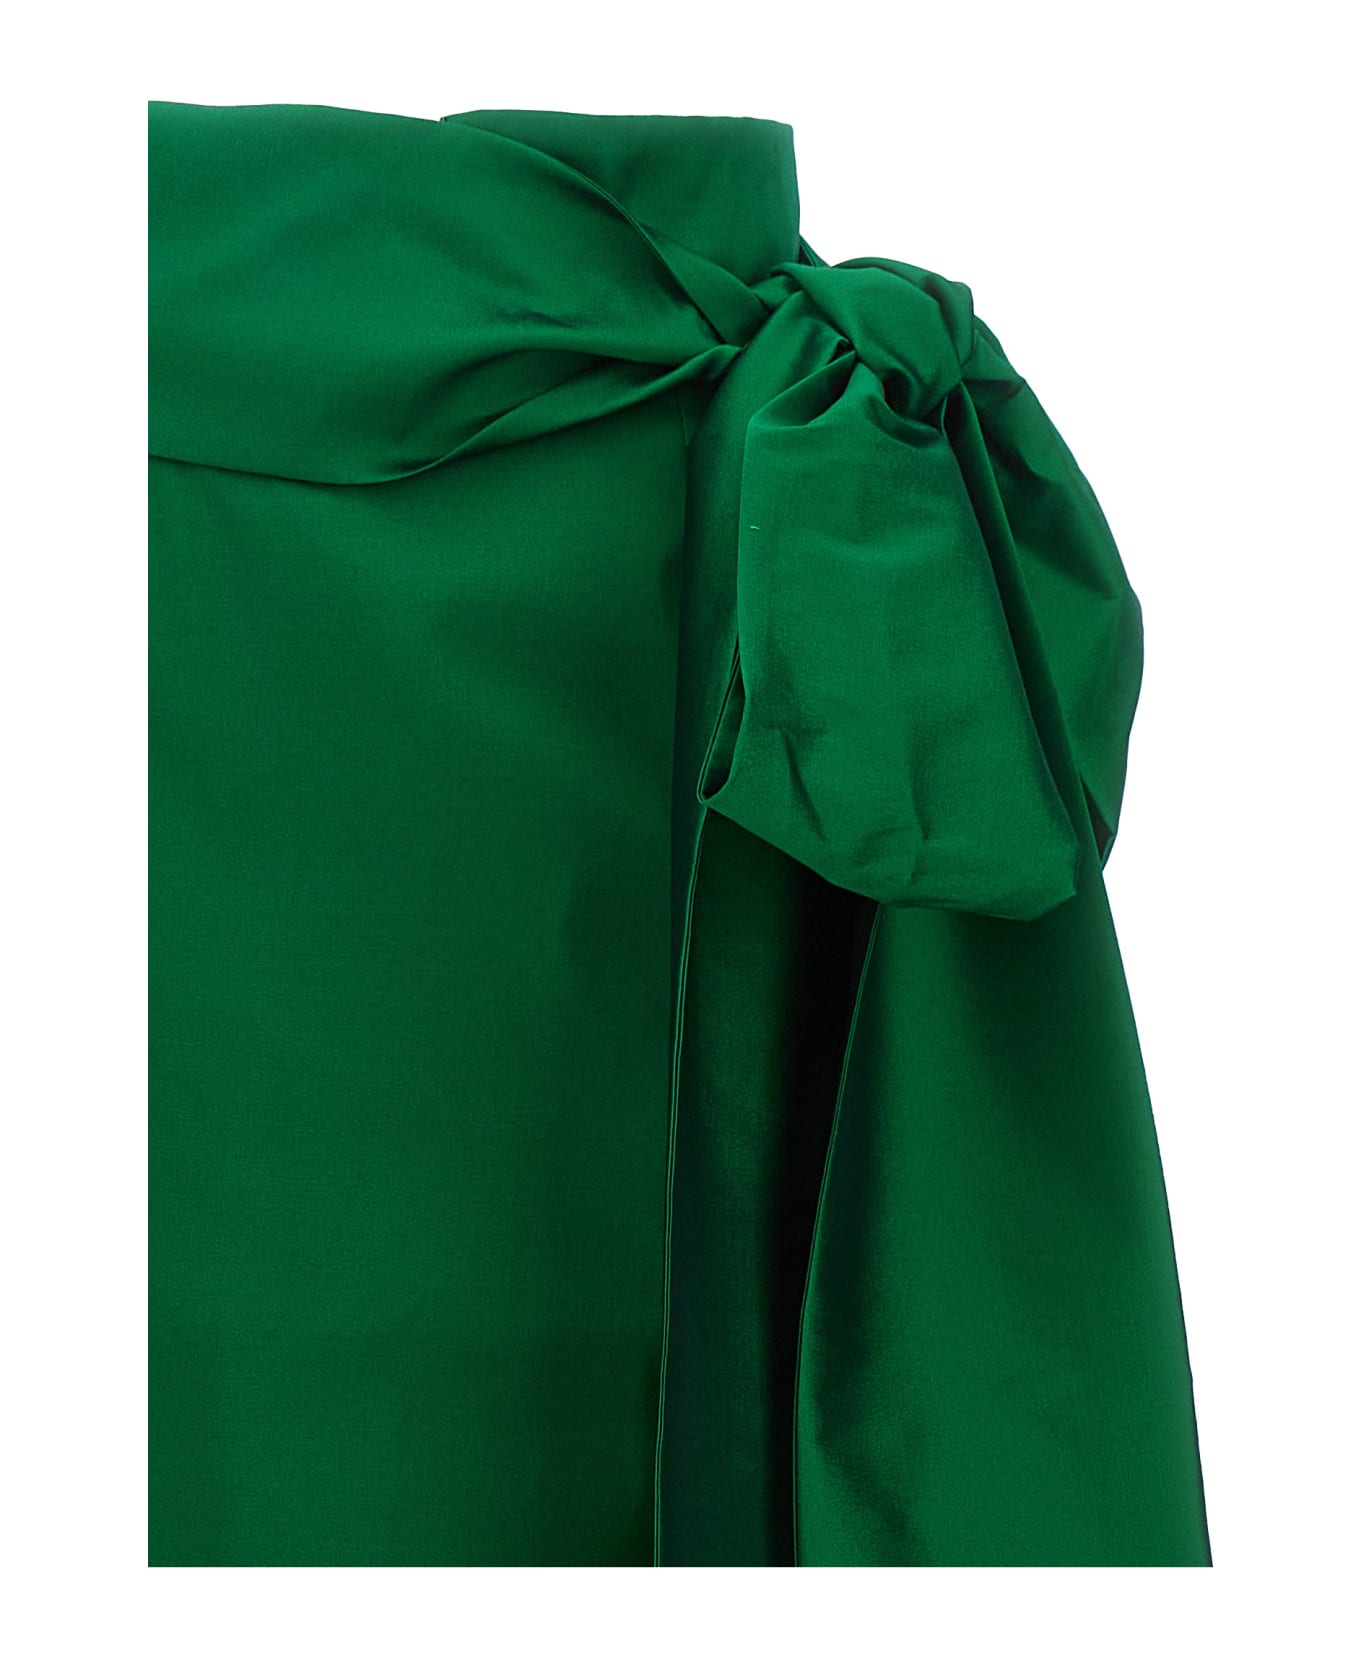 Bernadette 'bernard' Skirt - Green